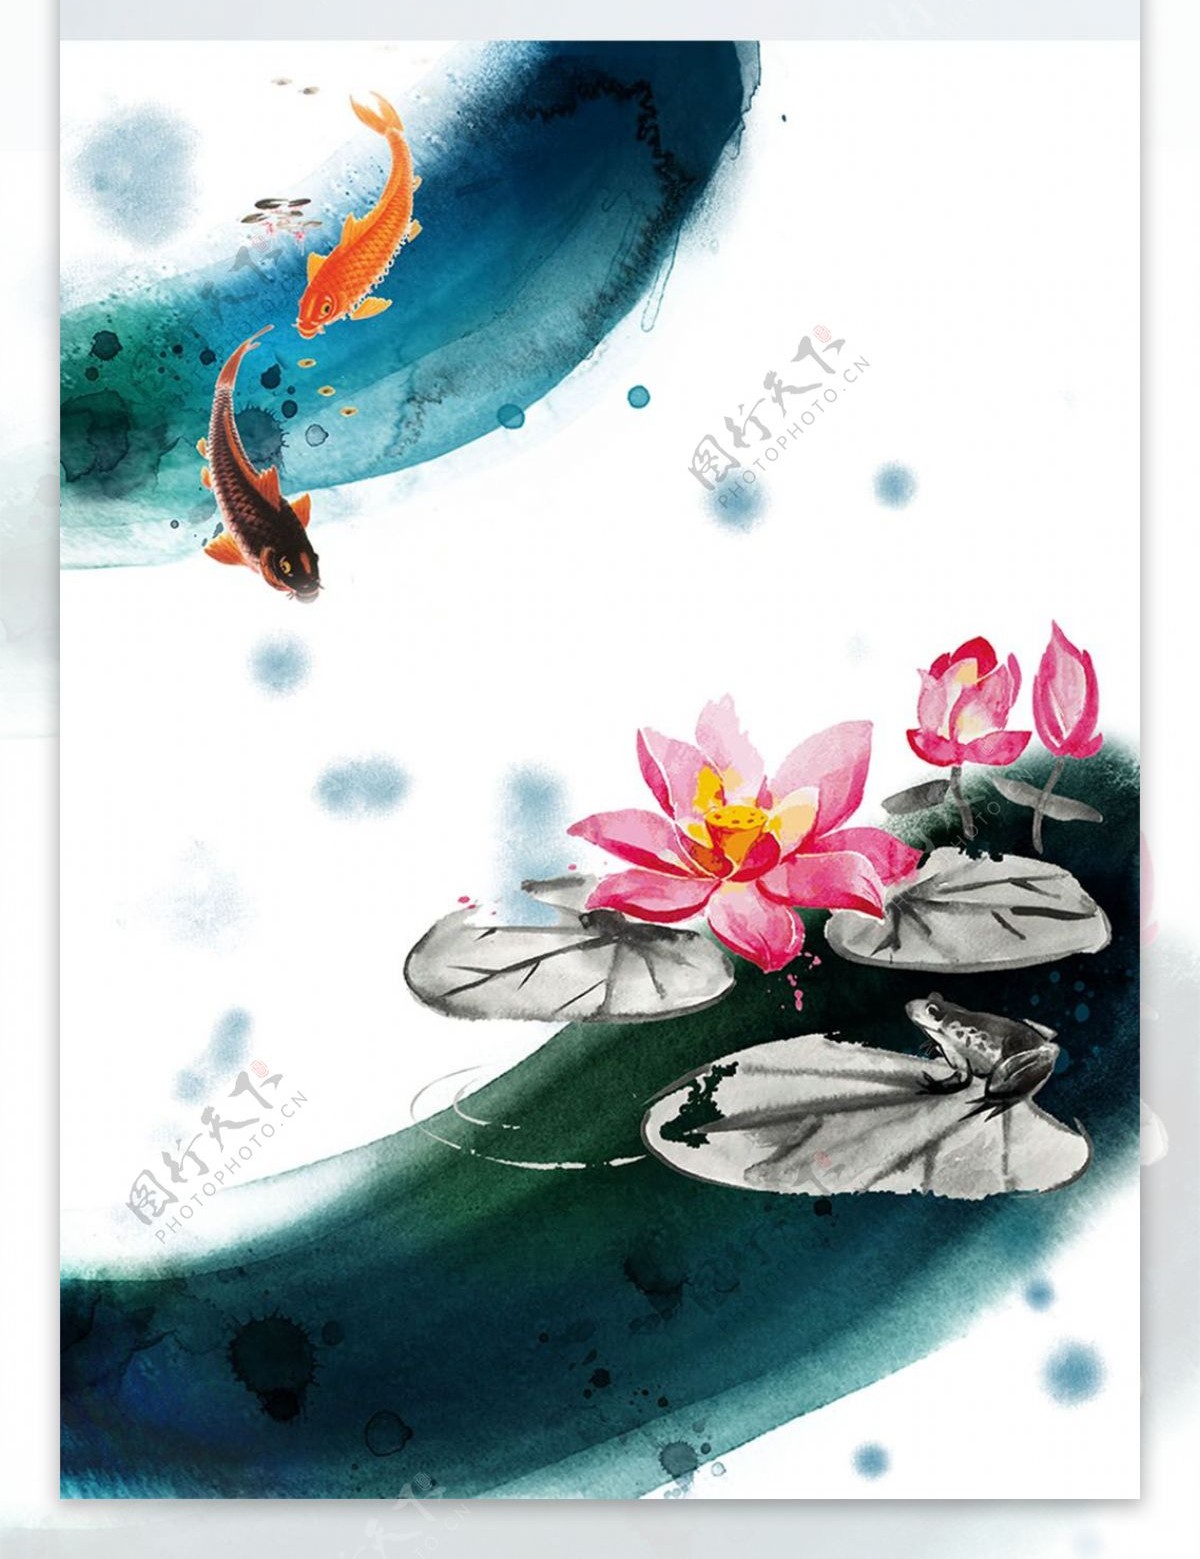 中国风水墨彩色荷花手绘创意装饰画